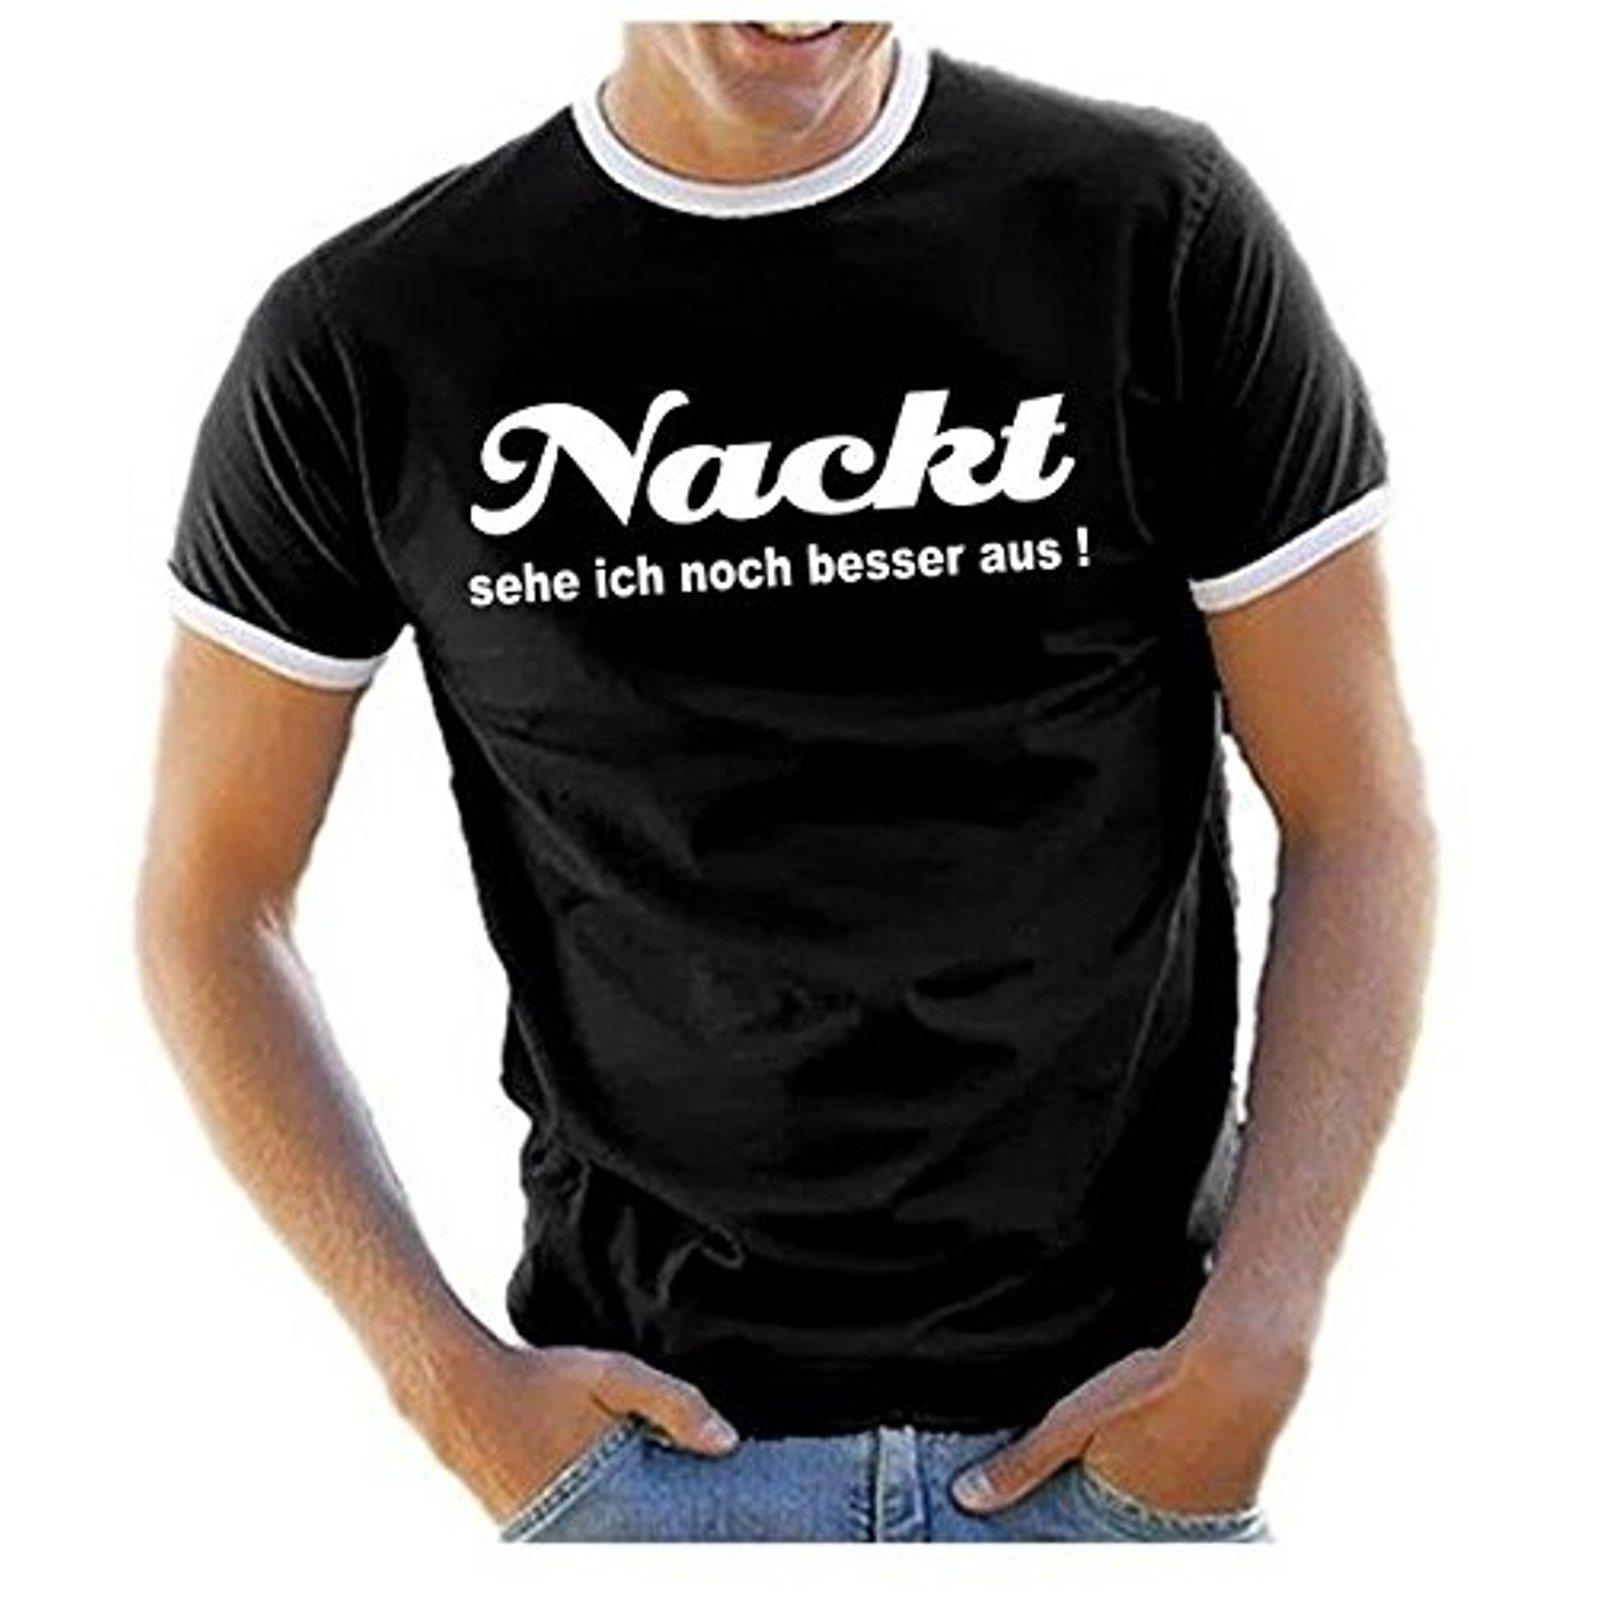 42++ T shirts mit lustigen spruechen fuer maenner ideas